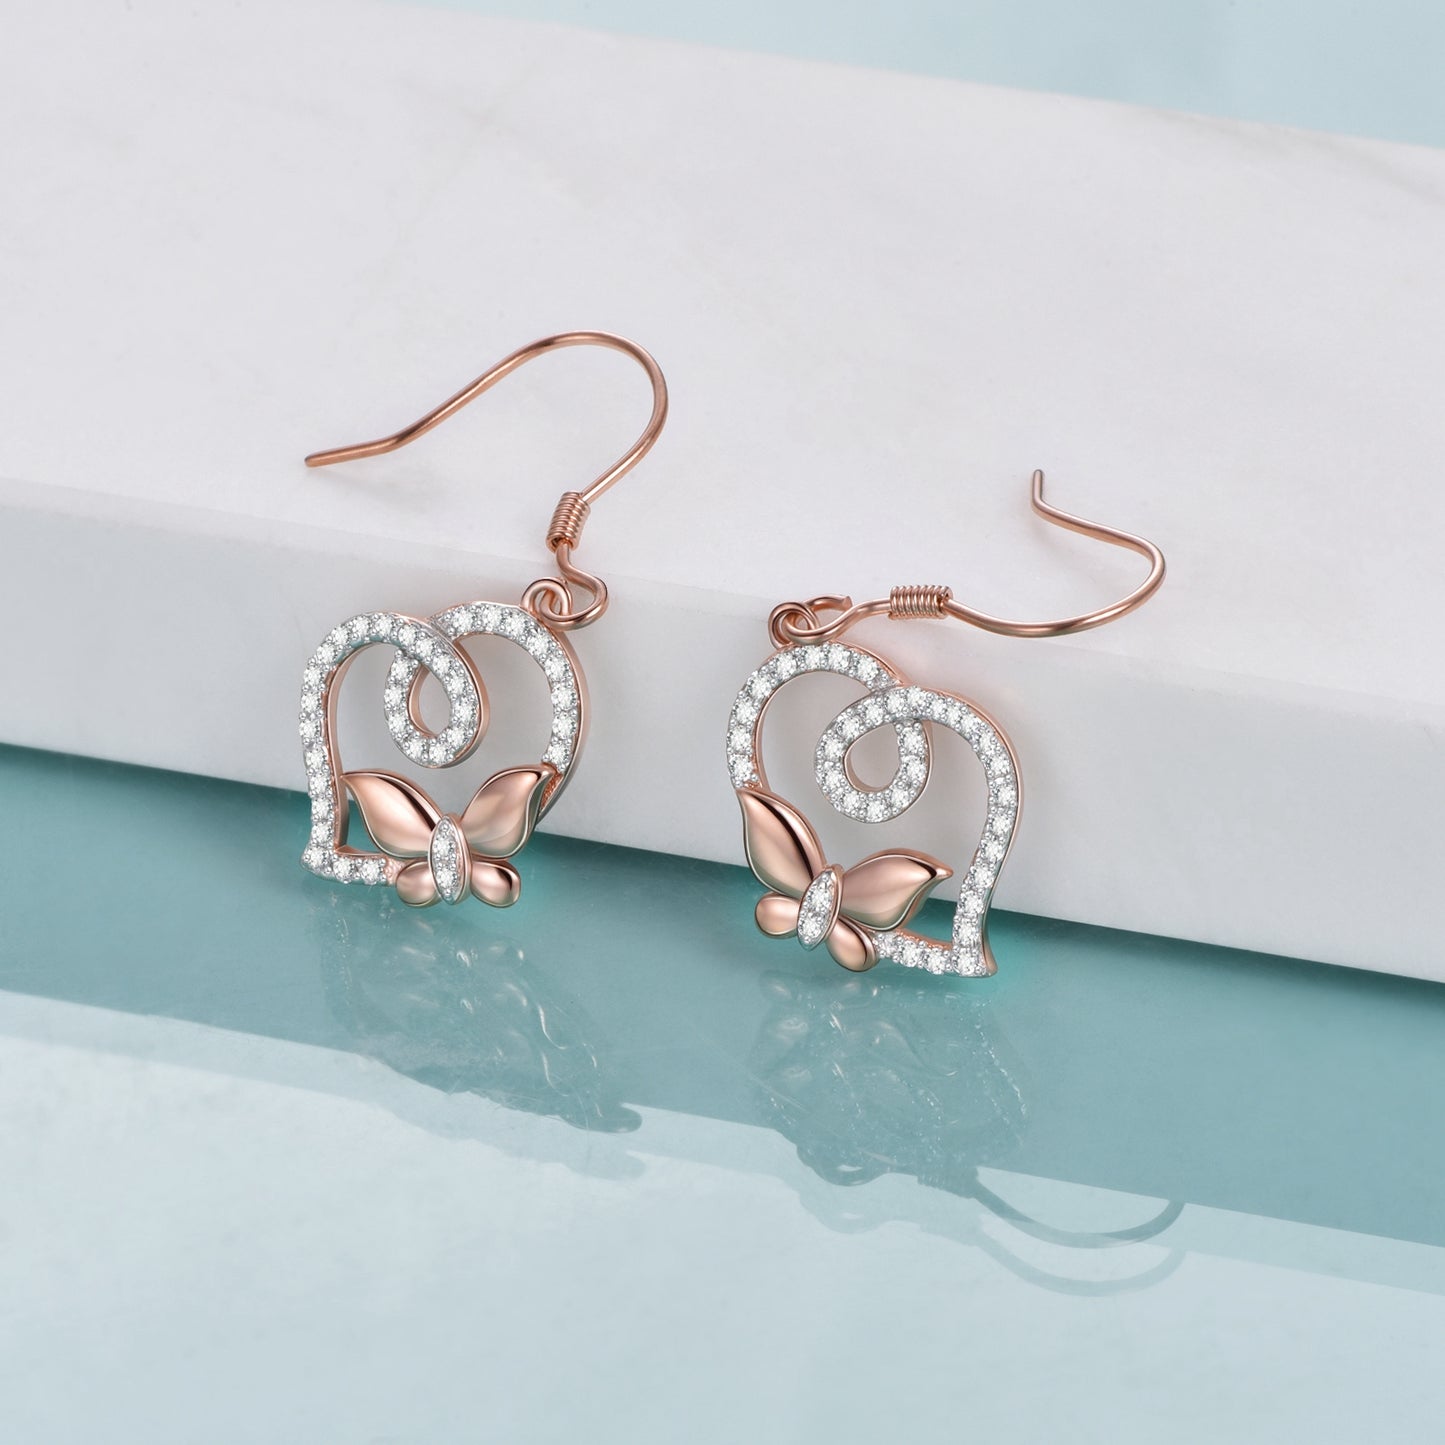 Butterfly Earrings Sterling Silver Heart Dangle Hook Earrings for Women Teens Birthday